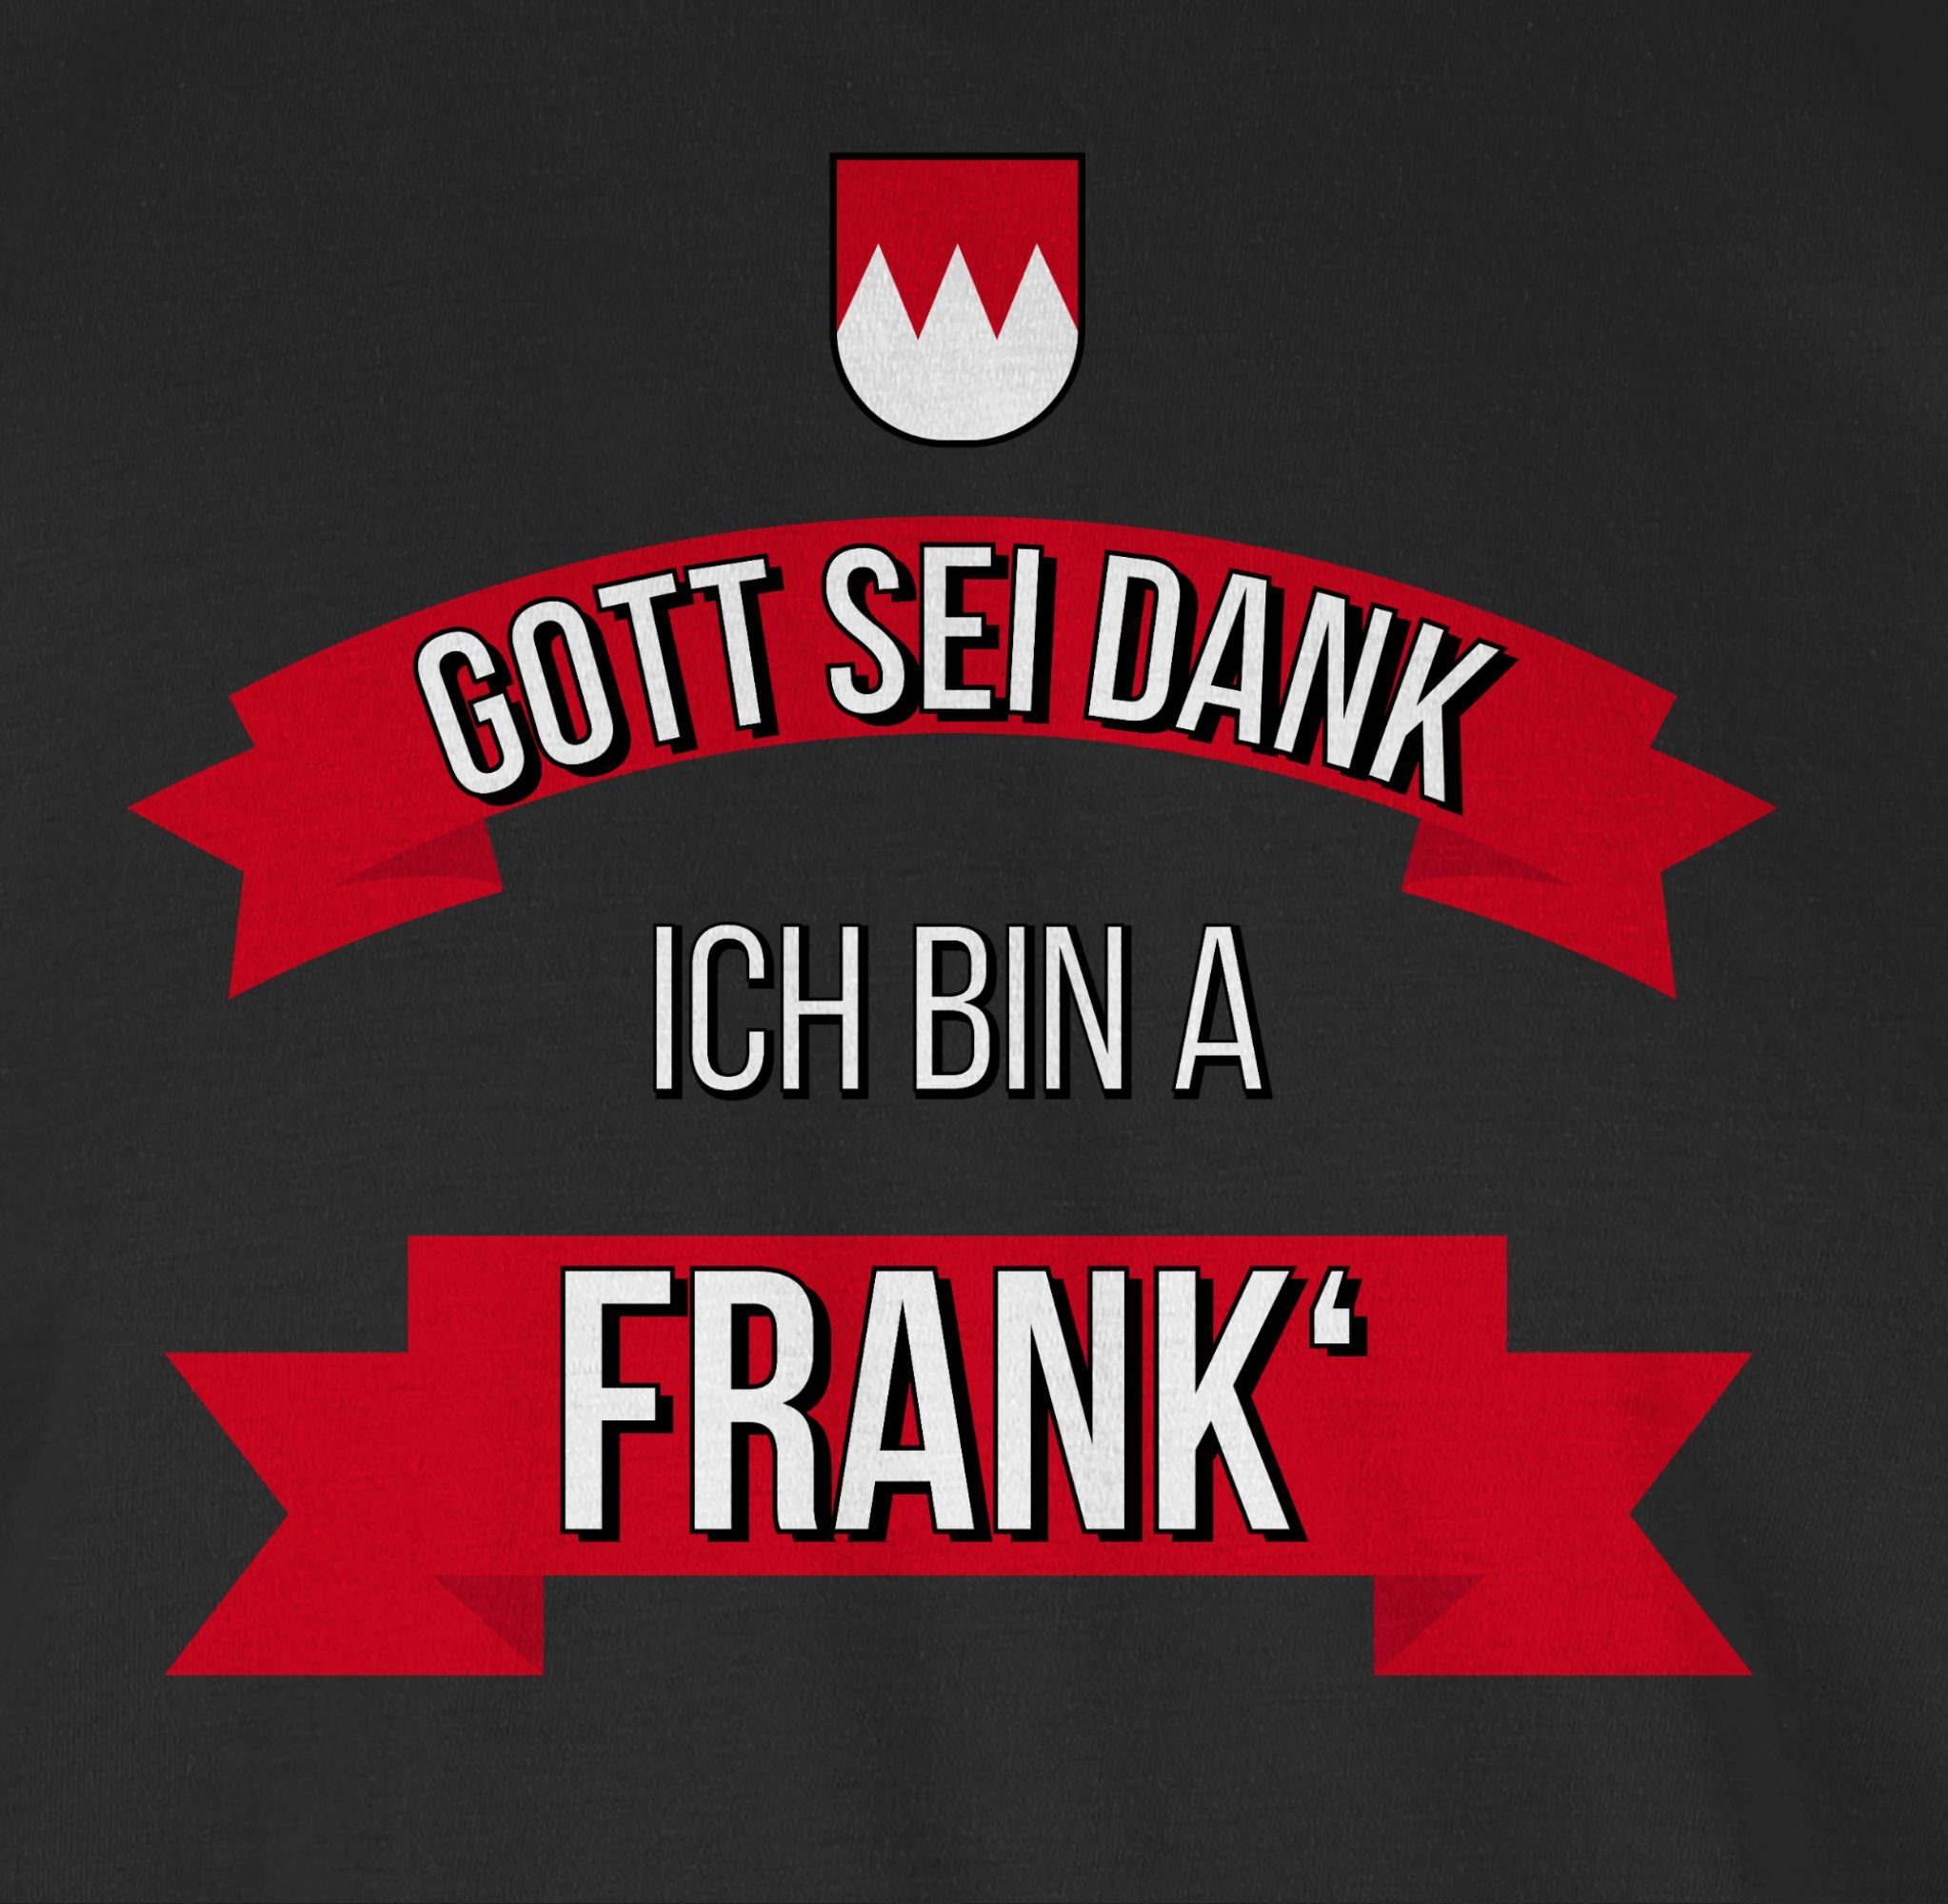 Frank Shirtracer Dank Schwarz a T-Shirt Gott sei Franken bin 1 ich Kinder